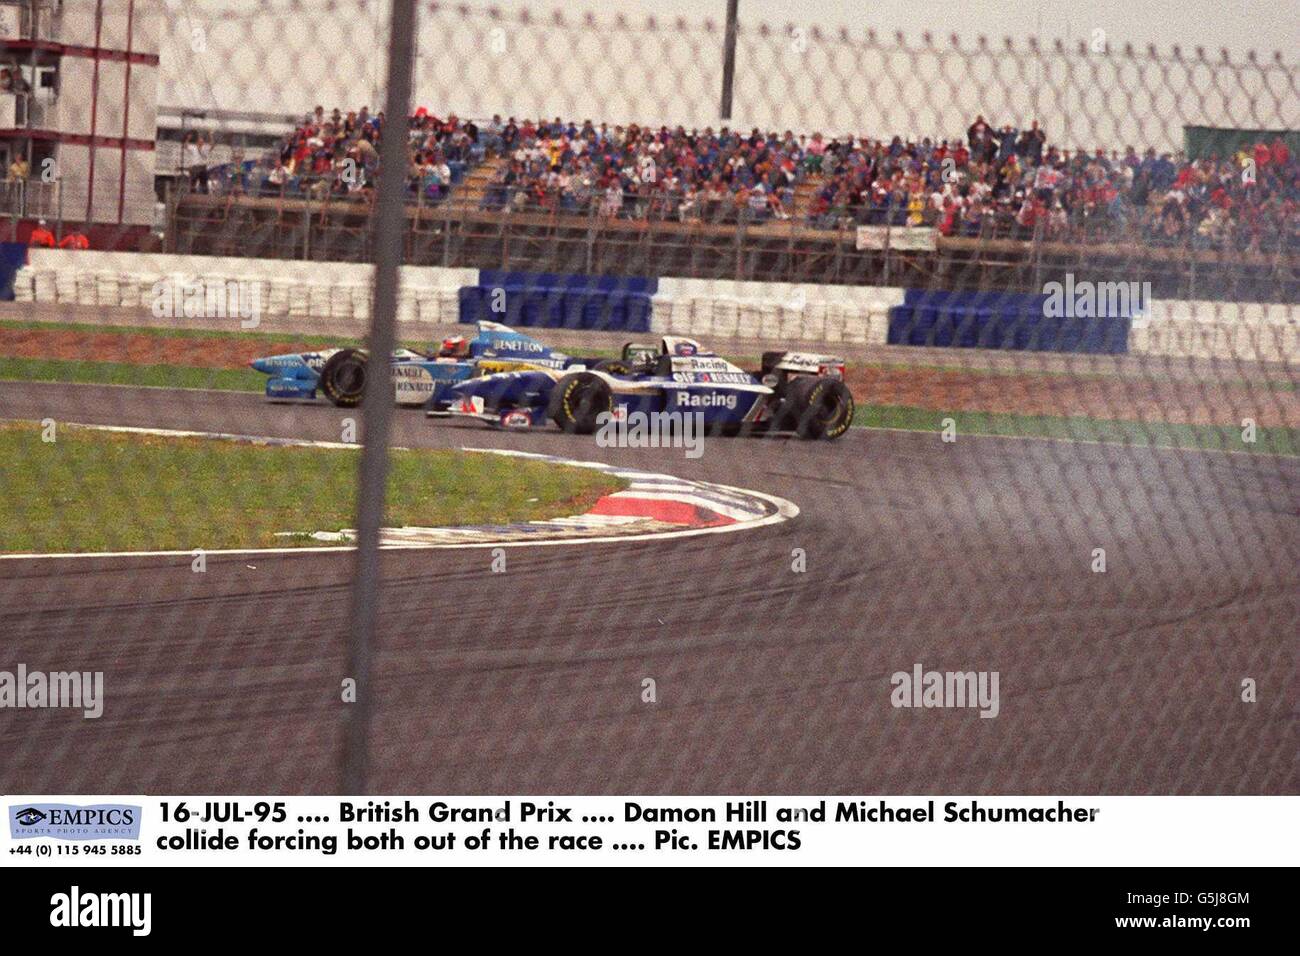 16-JUL-95. Großer Preis Von Großbritannien. Damon Hill und Michael Schumacher kollidieren und zwingen beide aus dem Rennen Stockfoto